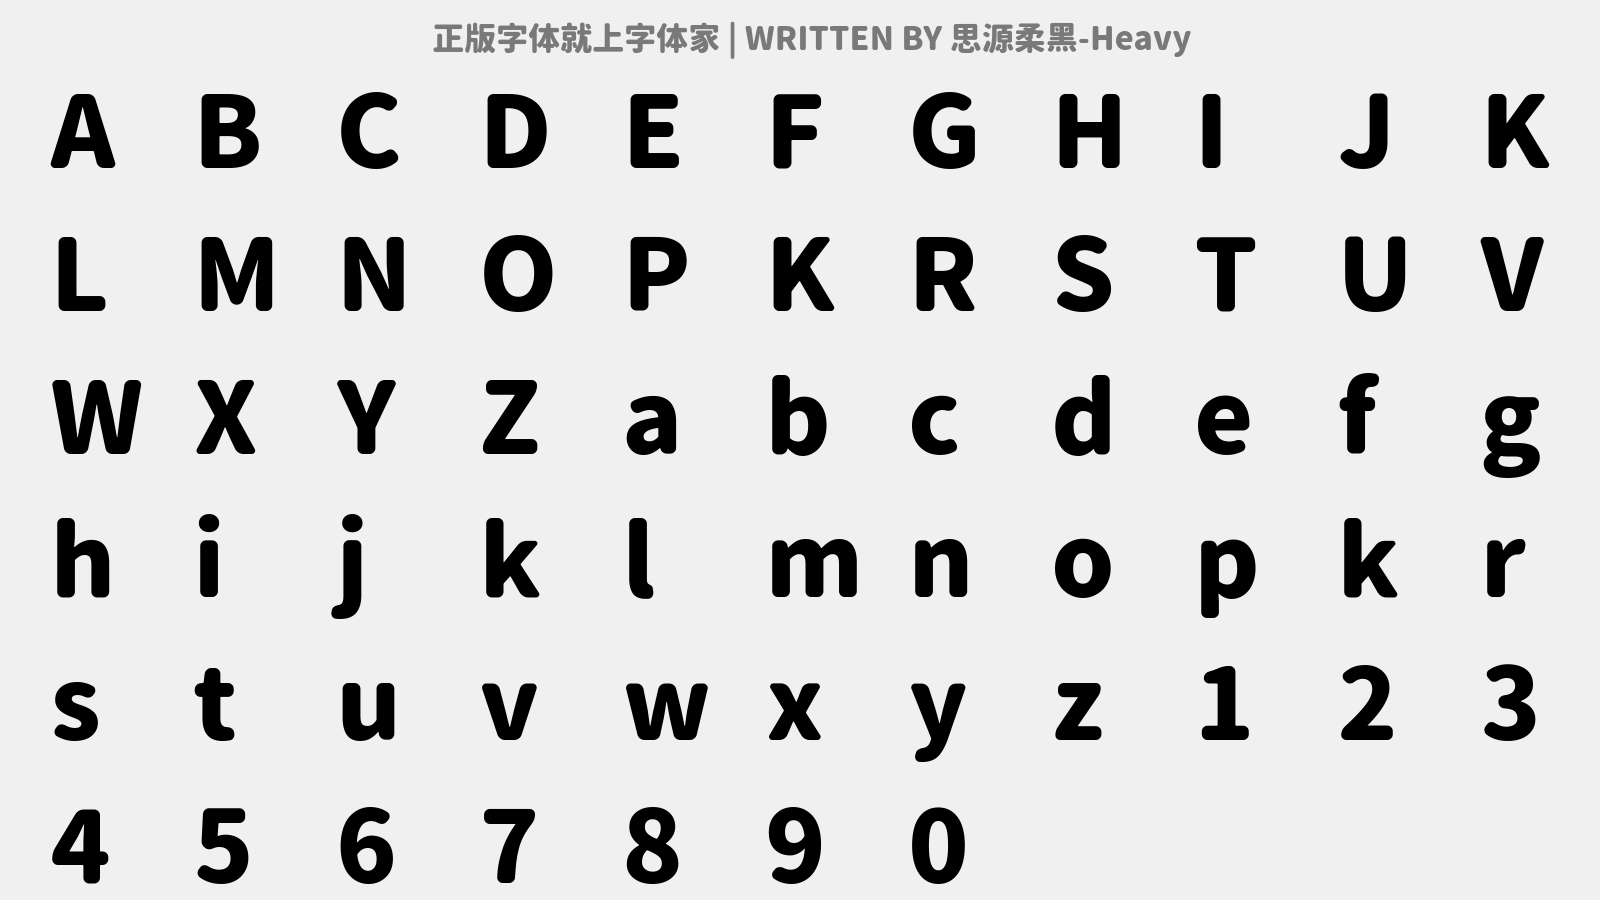 思源柔黑-Heavy - 大写字母/小写字母/数字